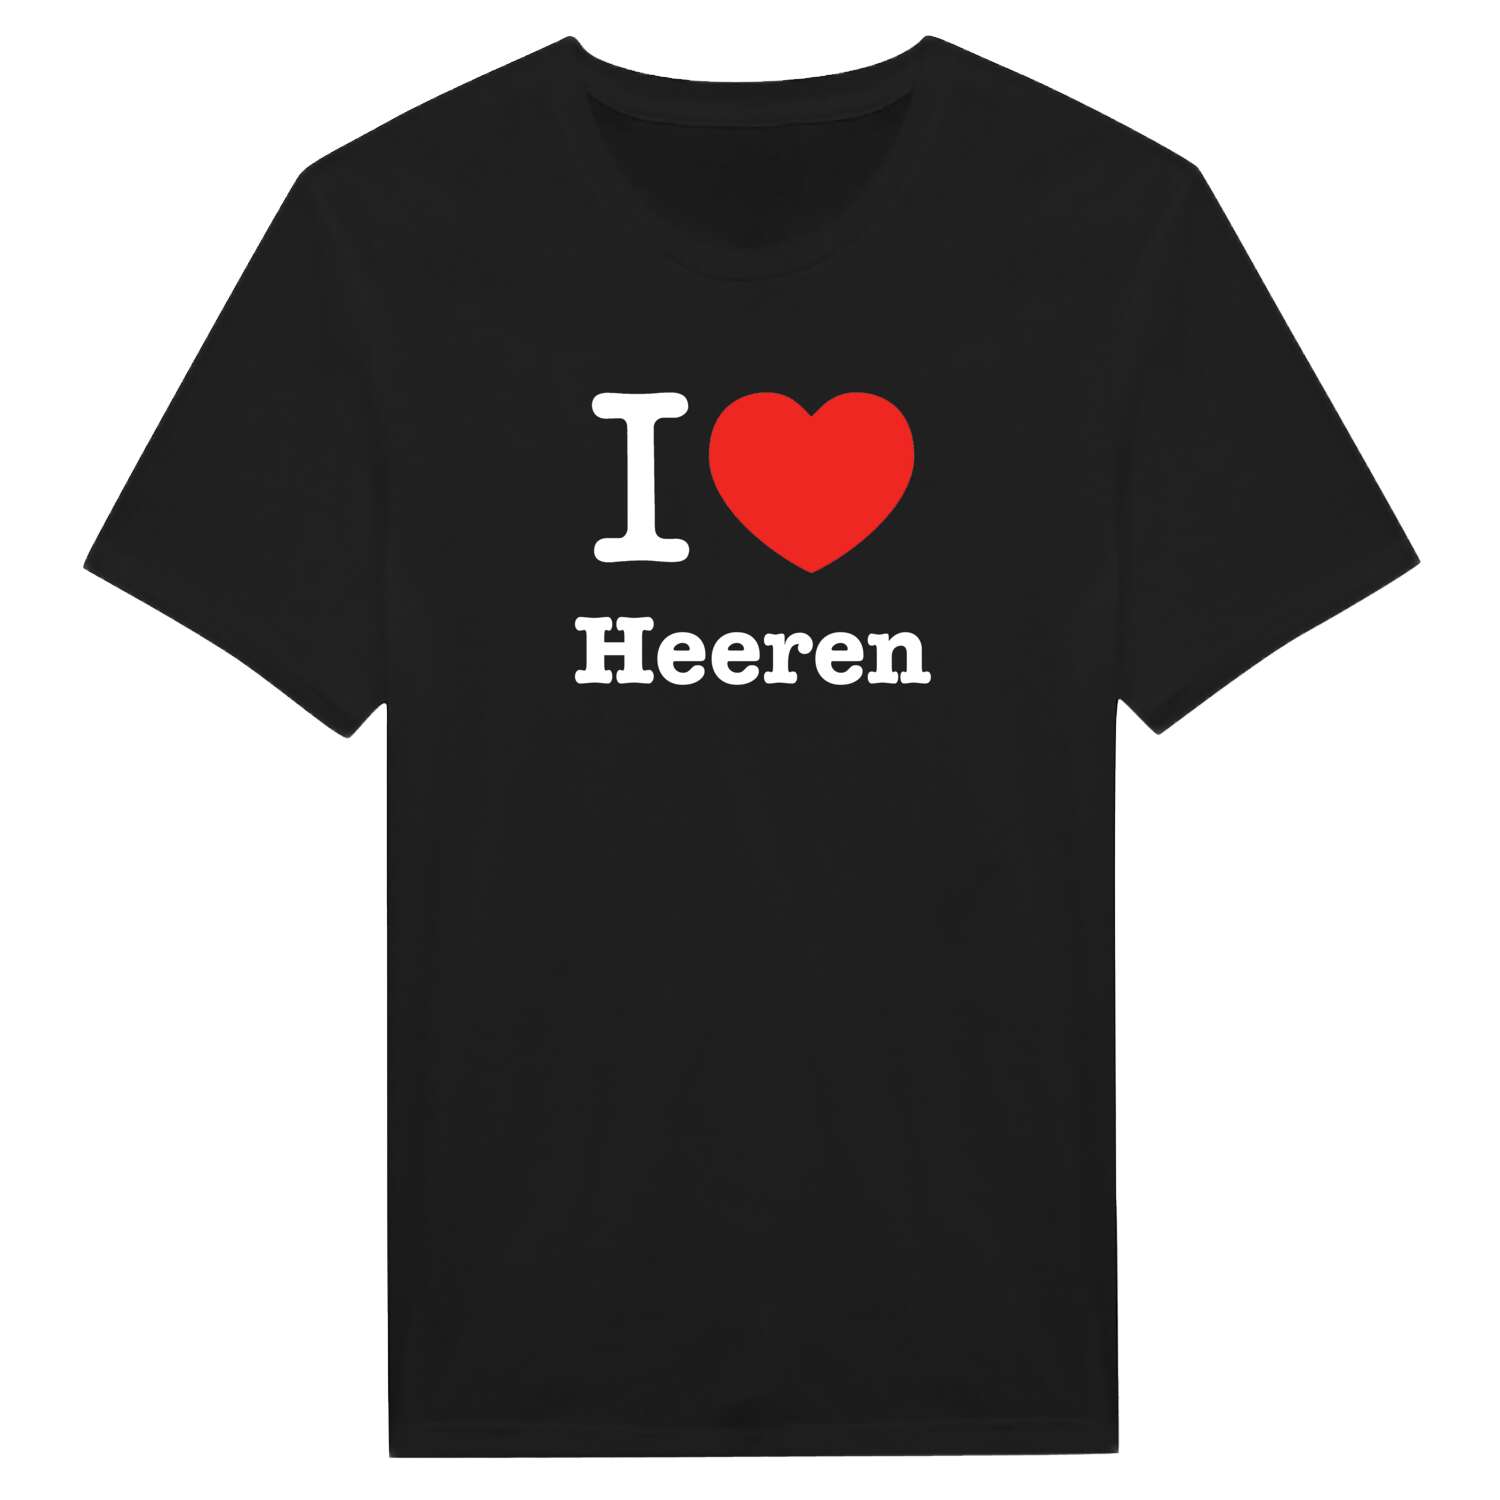 Heeren T-Shirt »I love«